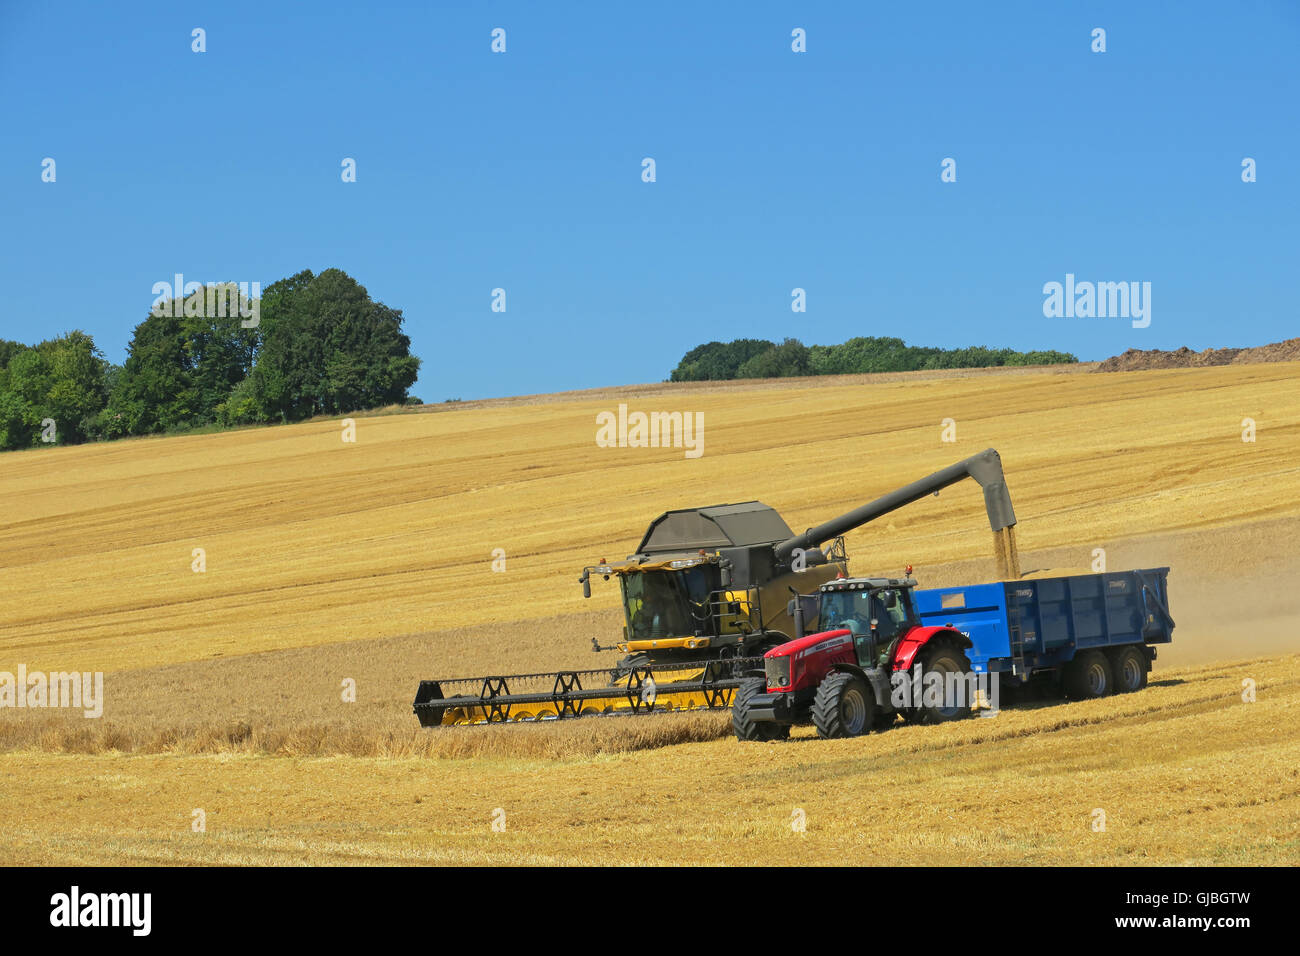 Temps de récolte en Angleterre. Chaud été question ici, la météo donne aux agriculteurs la possibilité d'une récolte de blé de la récolte. Wiltshire UK Banque D'Images